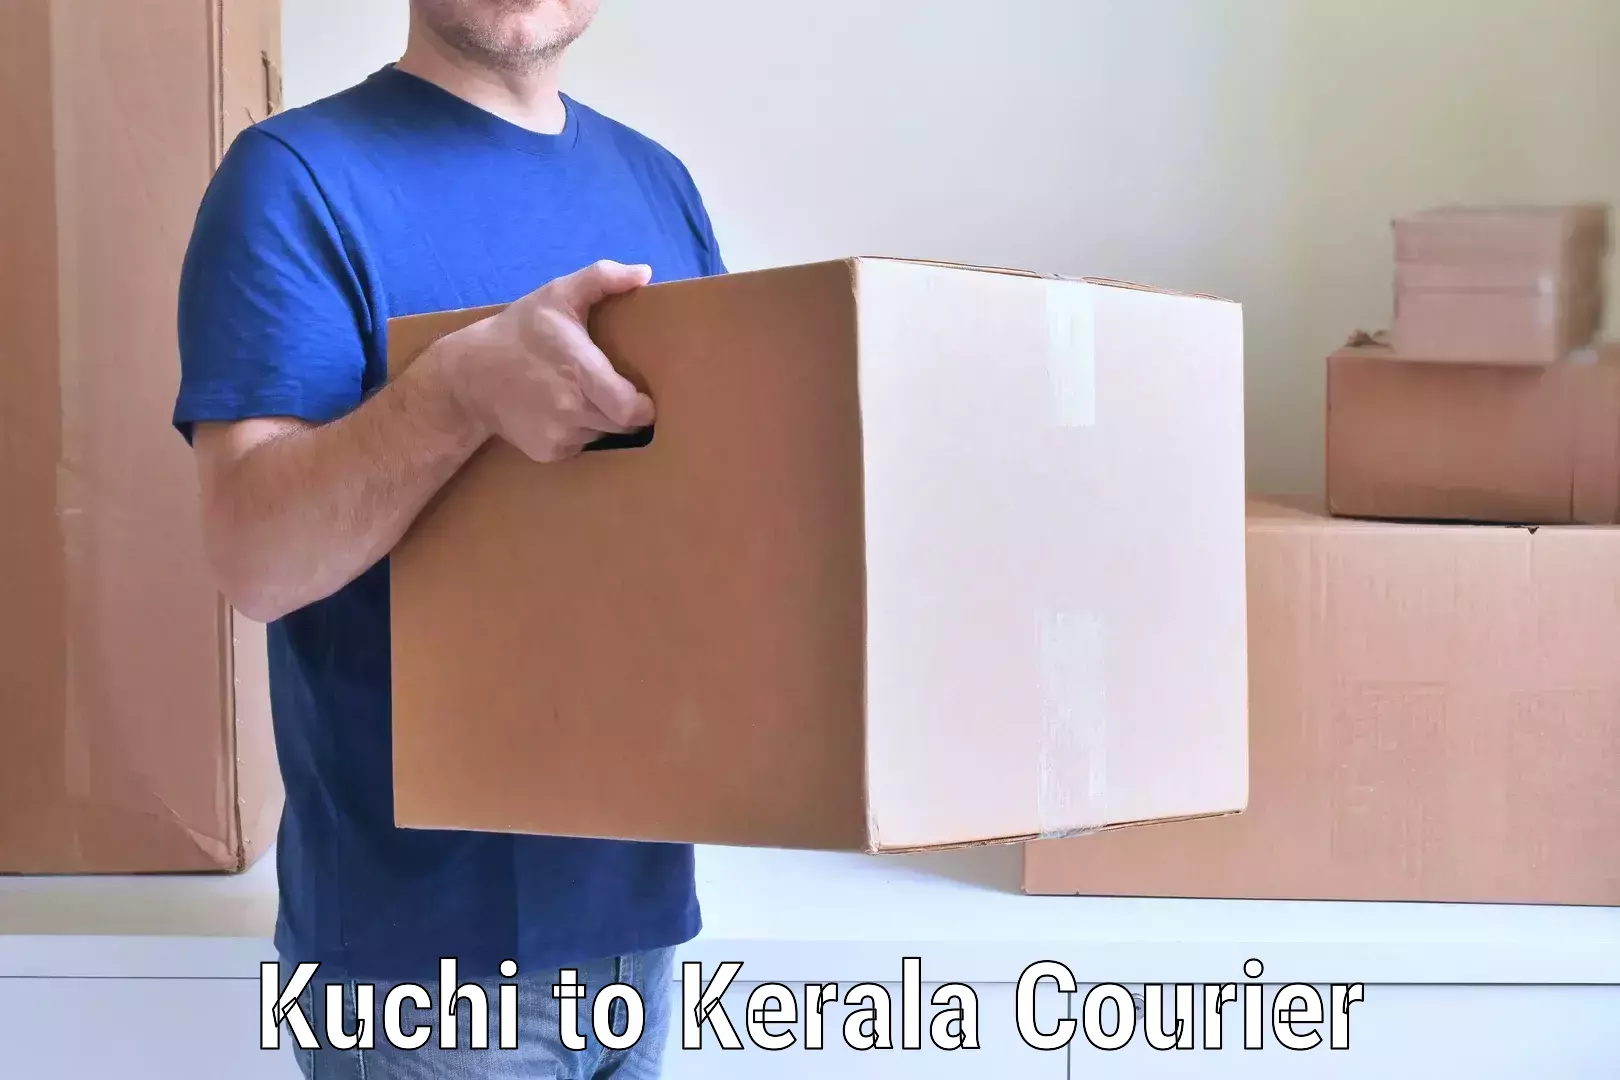 Household goods movers and packers Kuchi to Kottarakkara